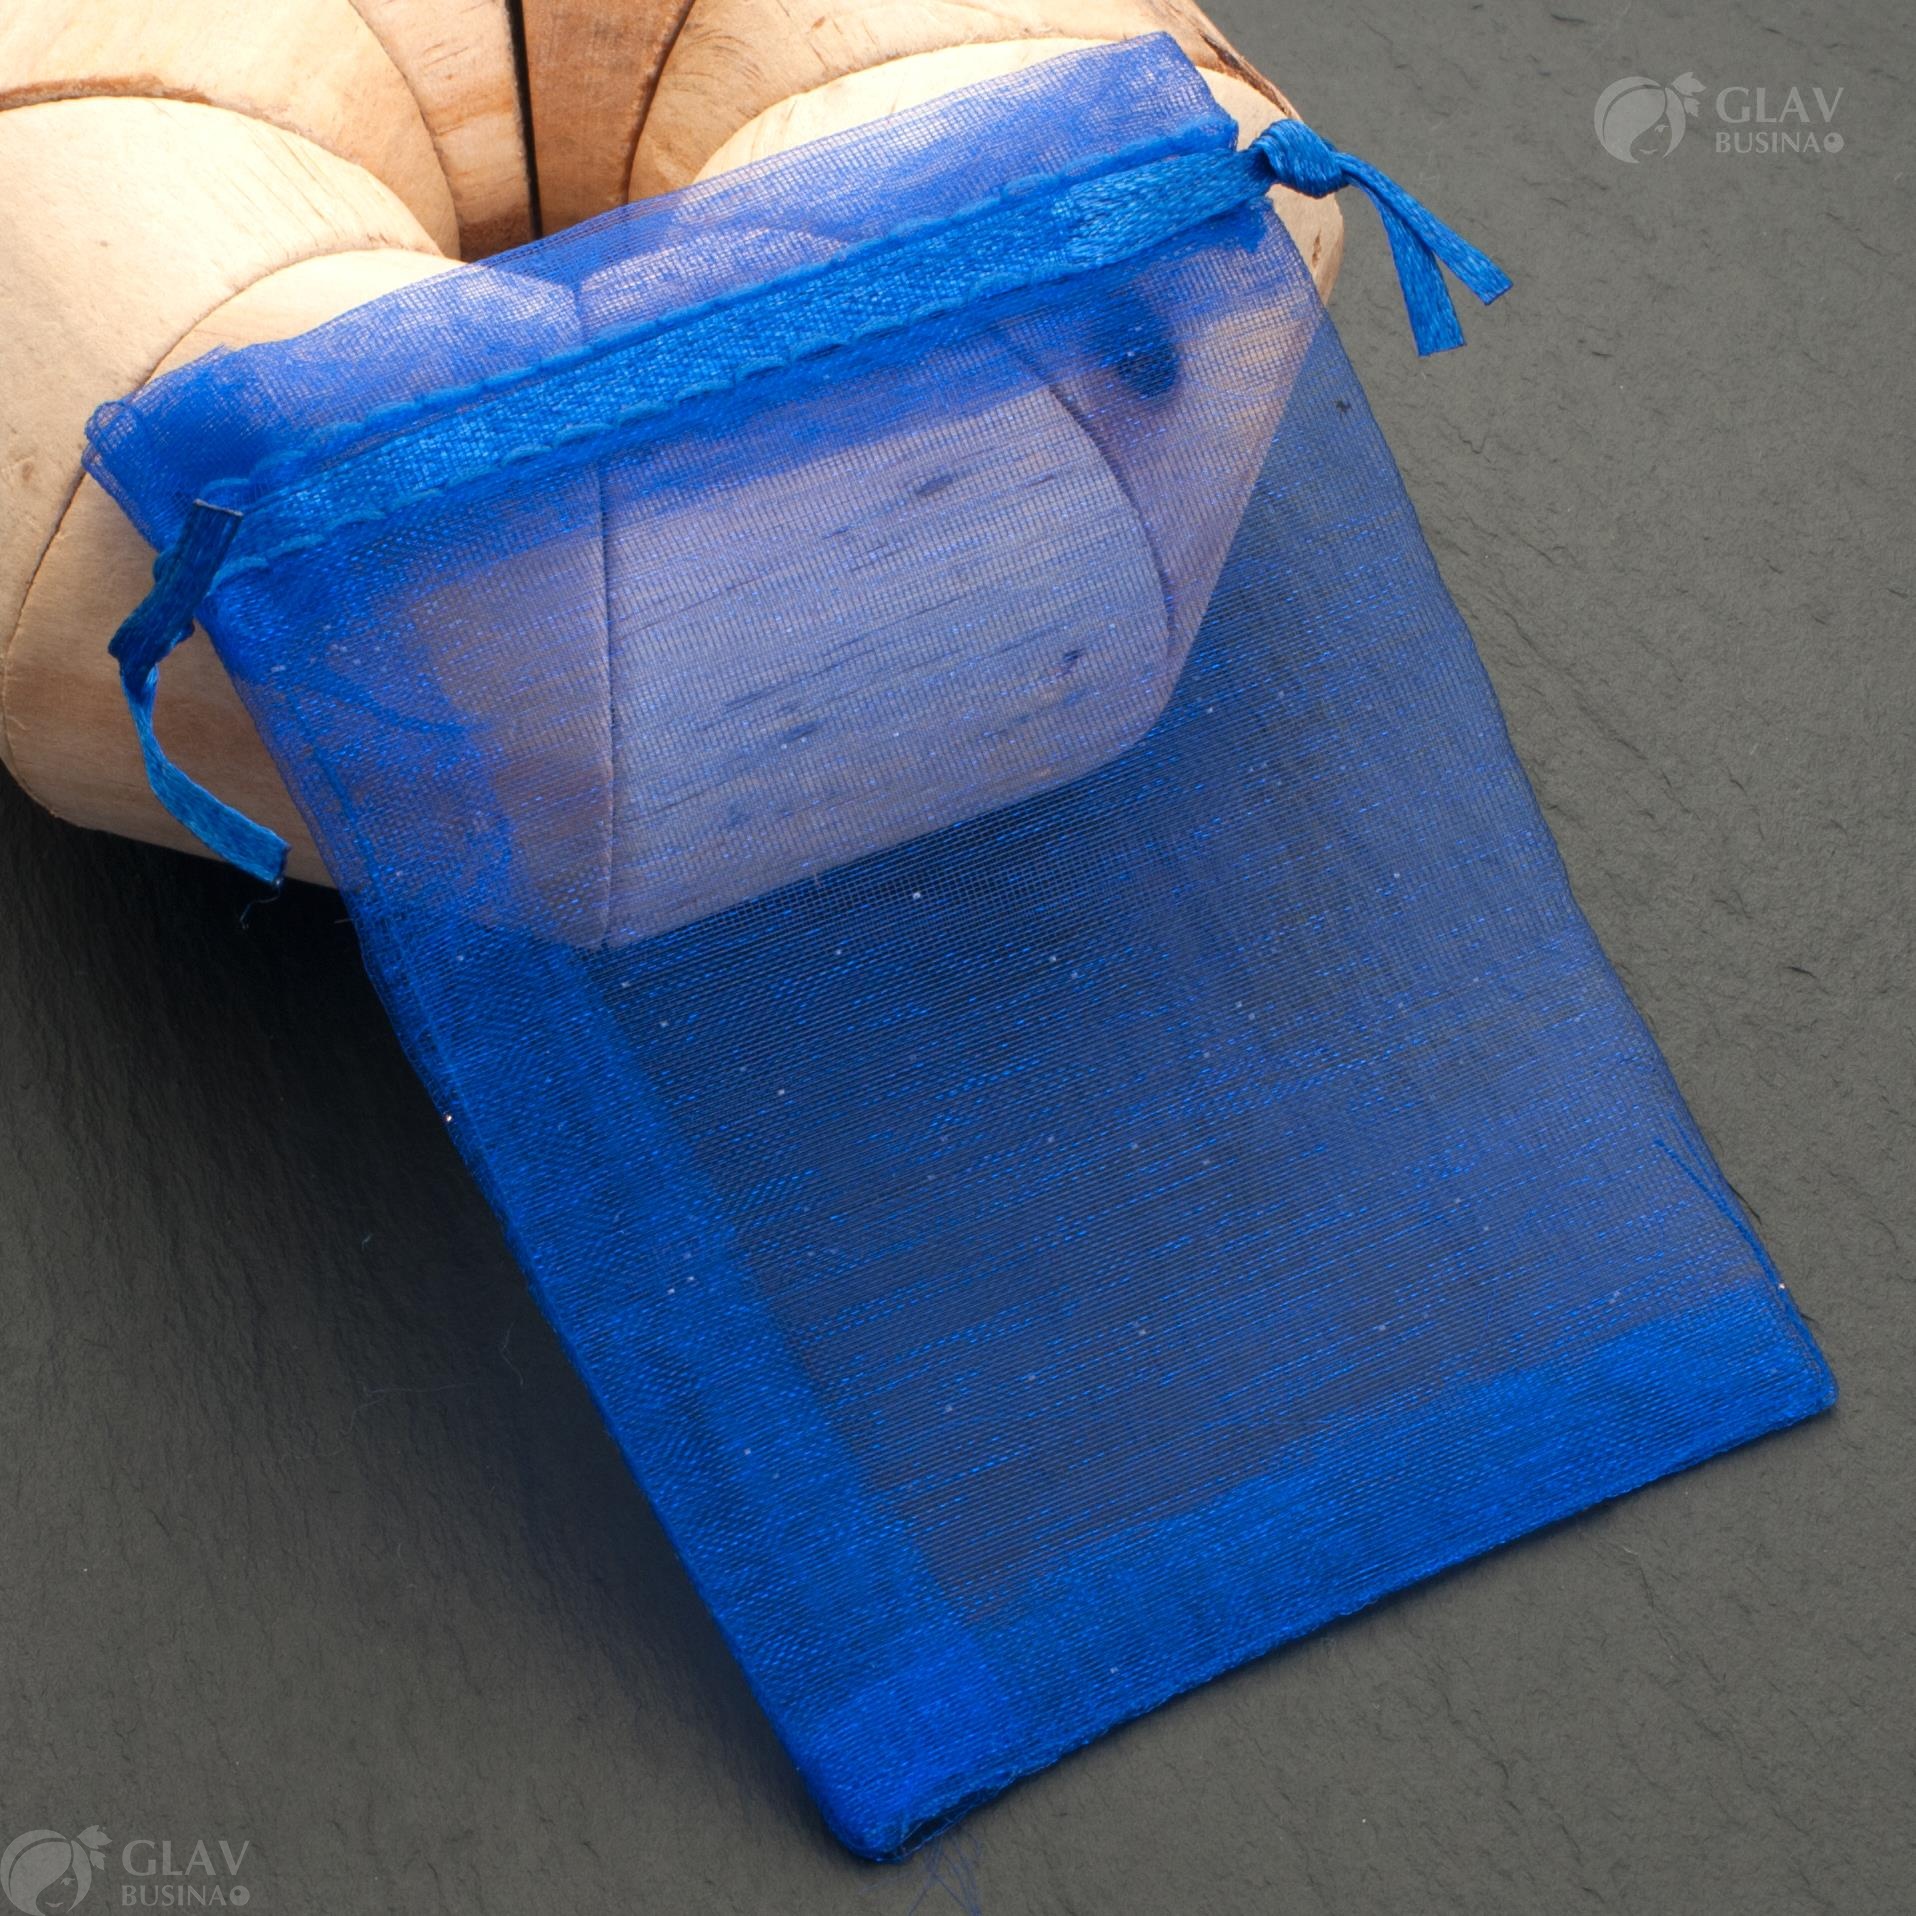 Синие мешочки из органзы с ленточкой, размером 9х12 см, идеальны для упаковки подарков или украшений.